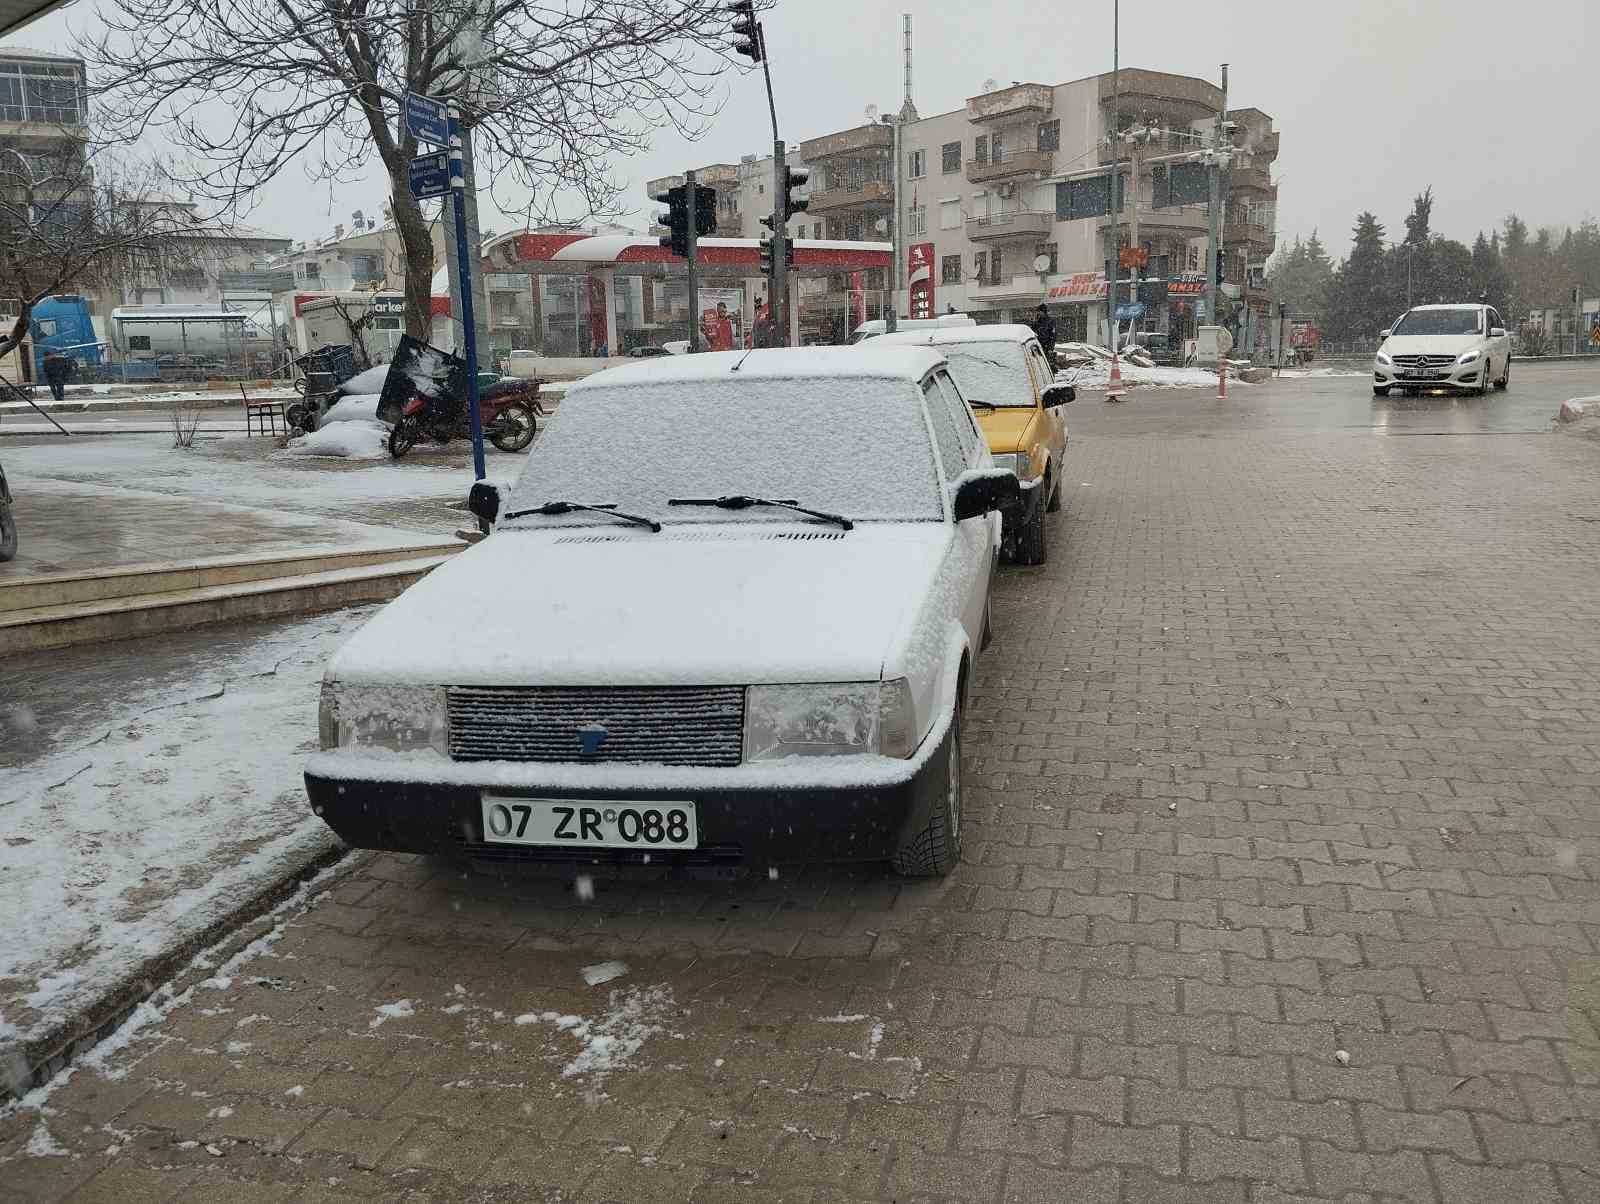 Antalyanin Korkuteli Ilcesinde Kar Yagisi Basladi 0 9P8Ta6C8